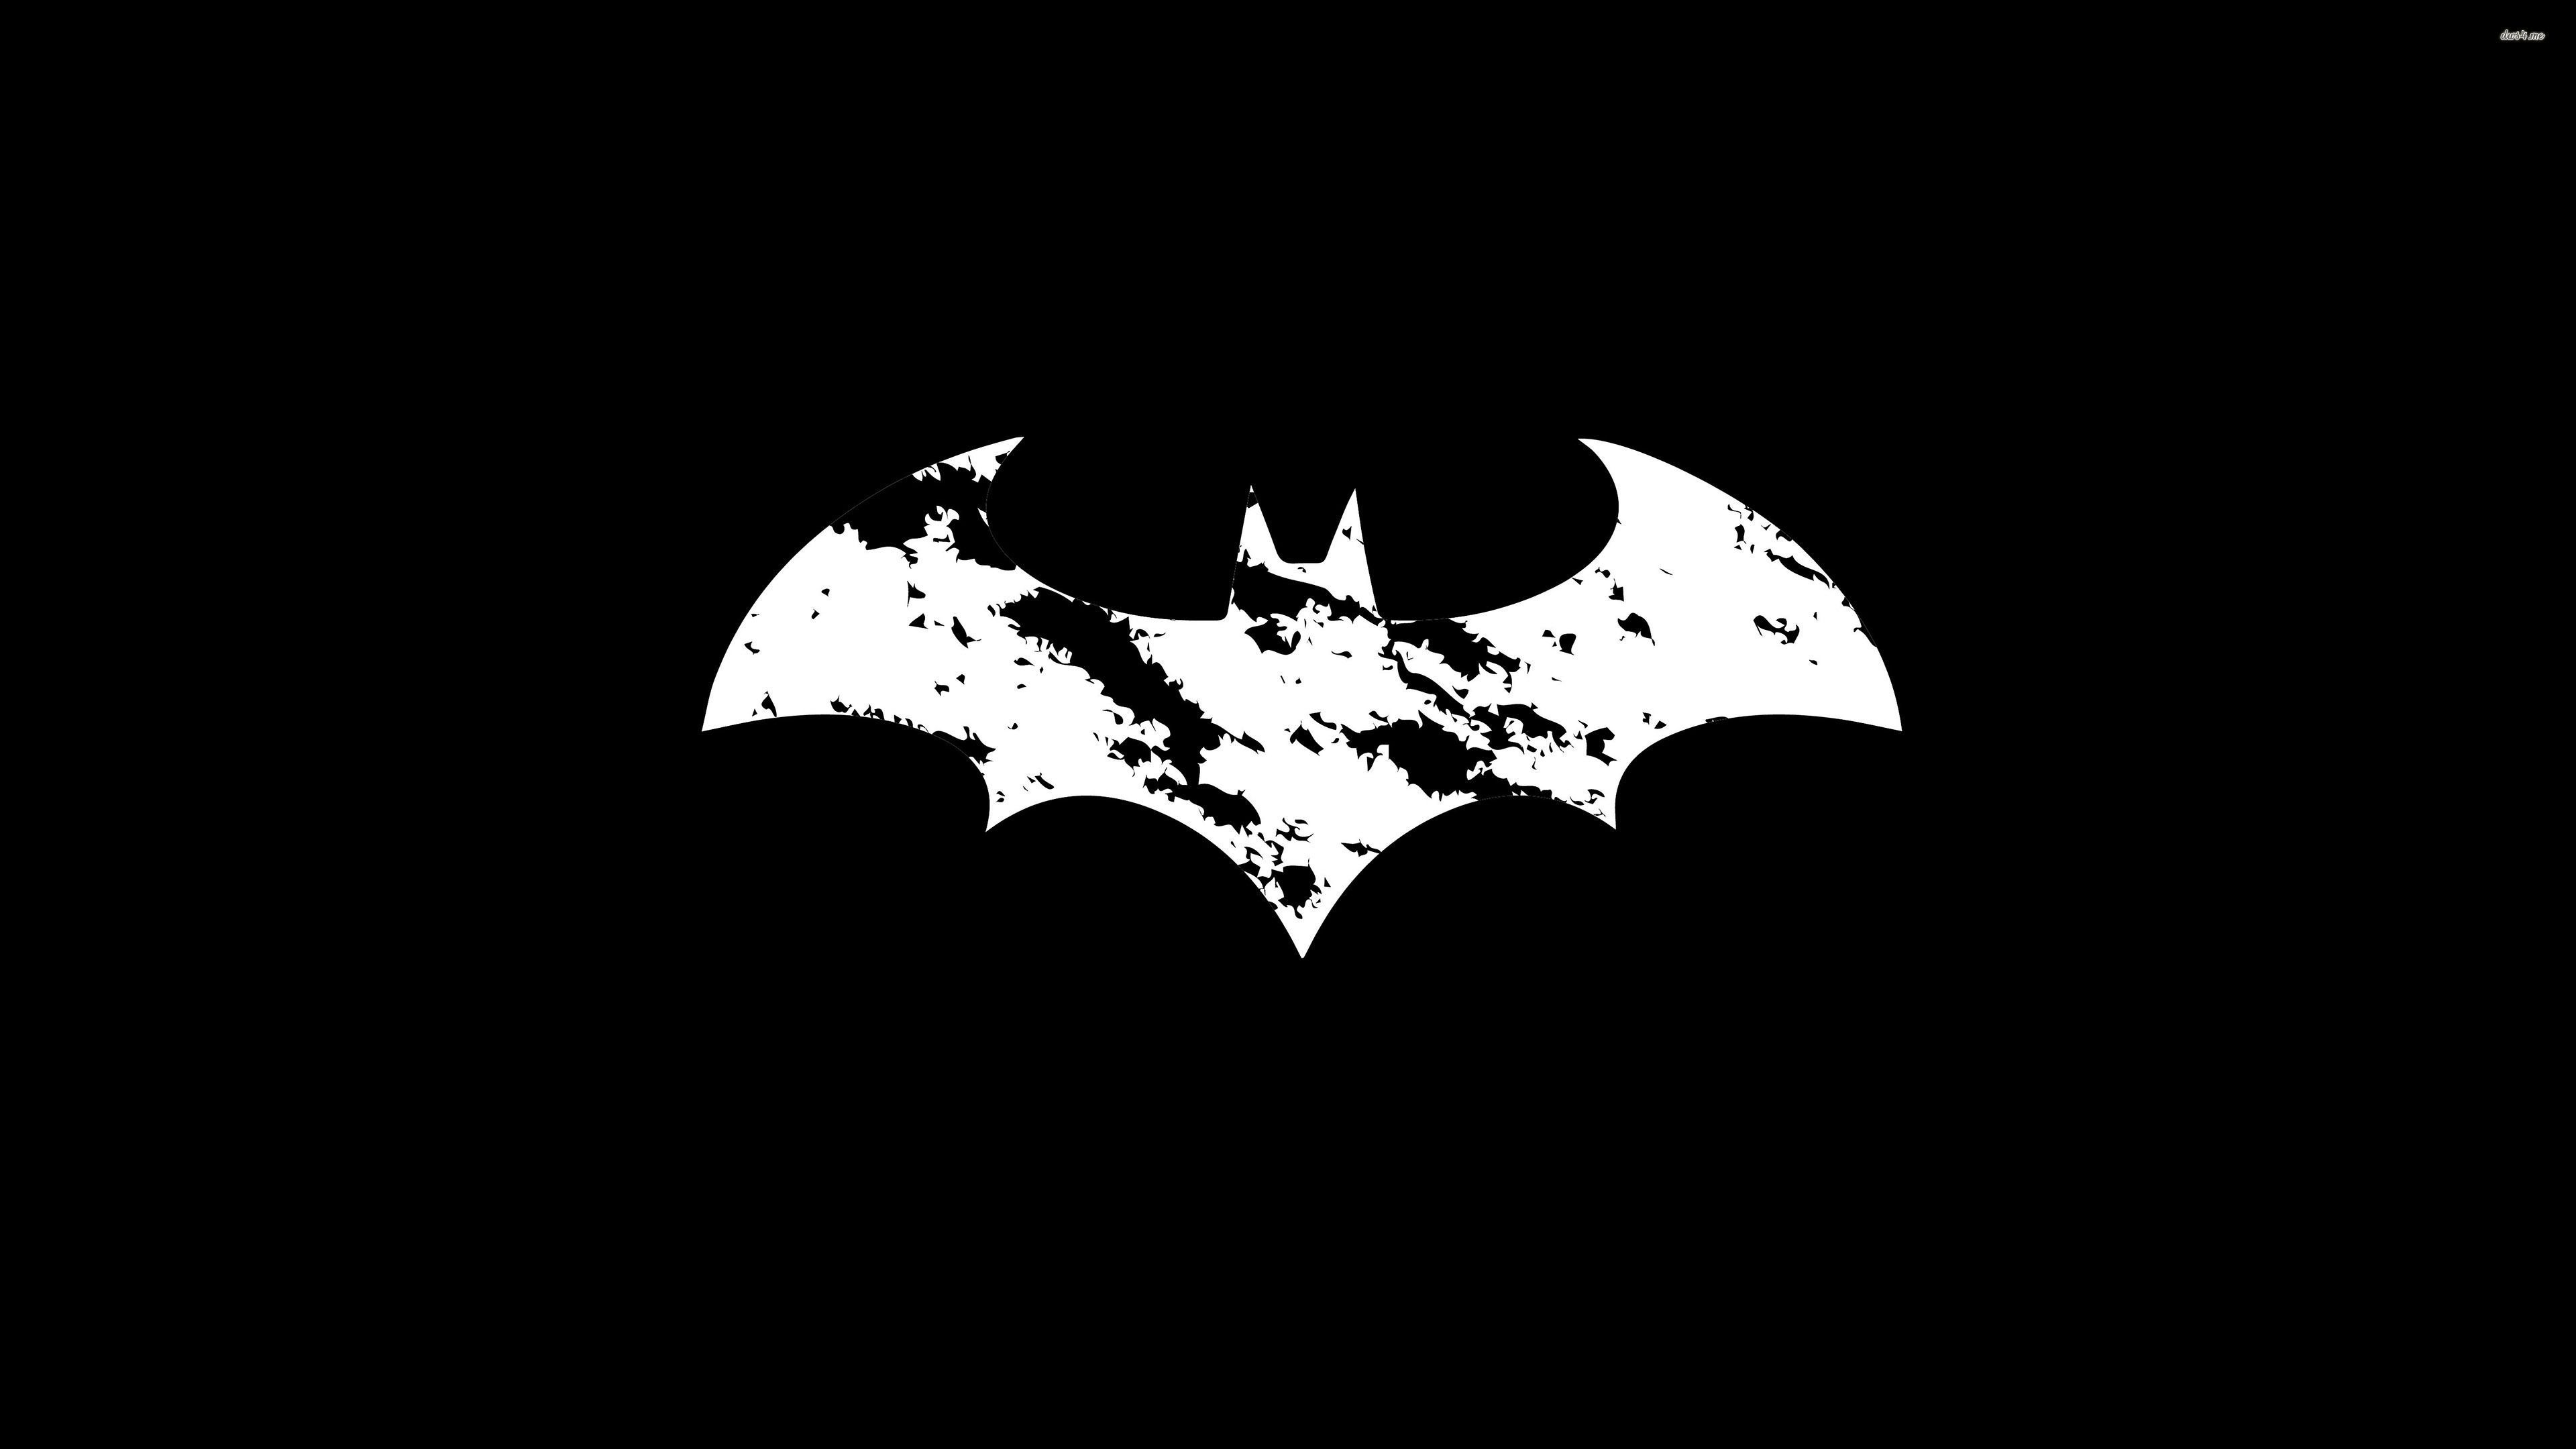 White Batman logo wallpaper - Comic wallpapers - #44014